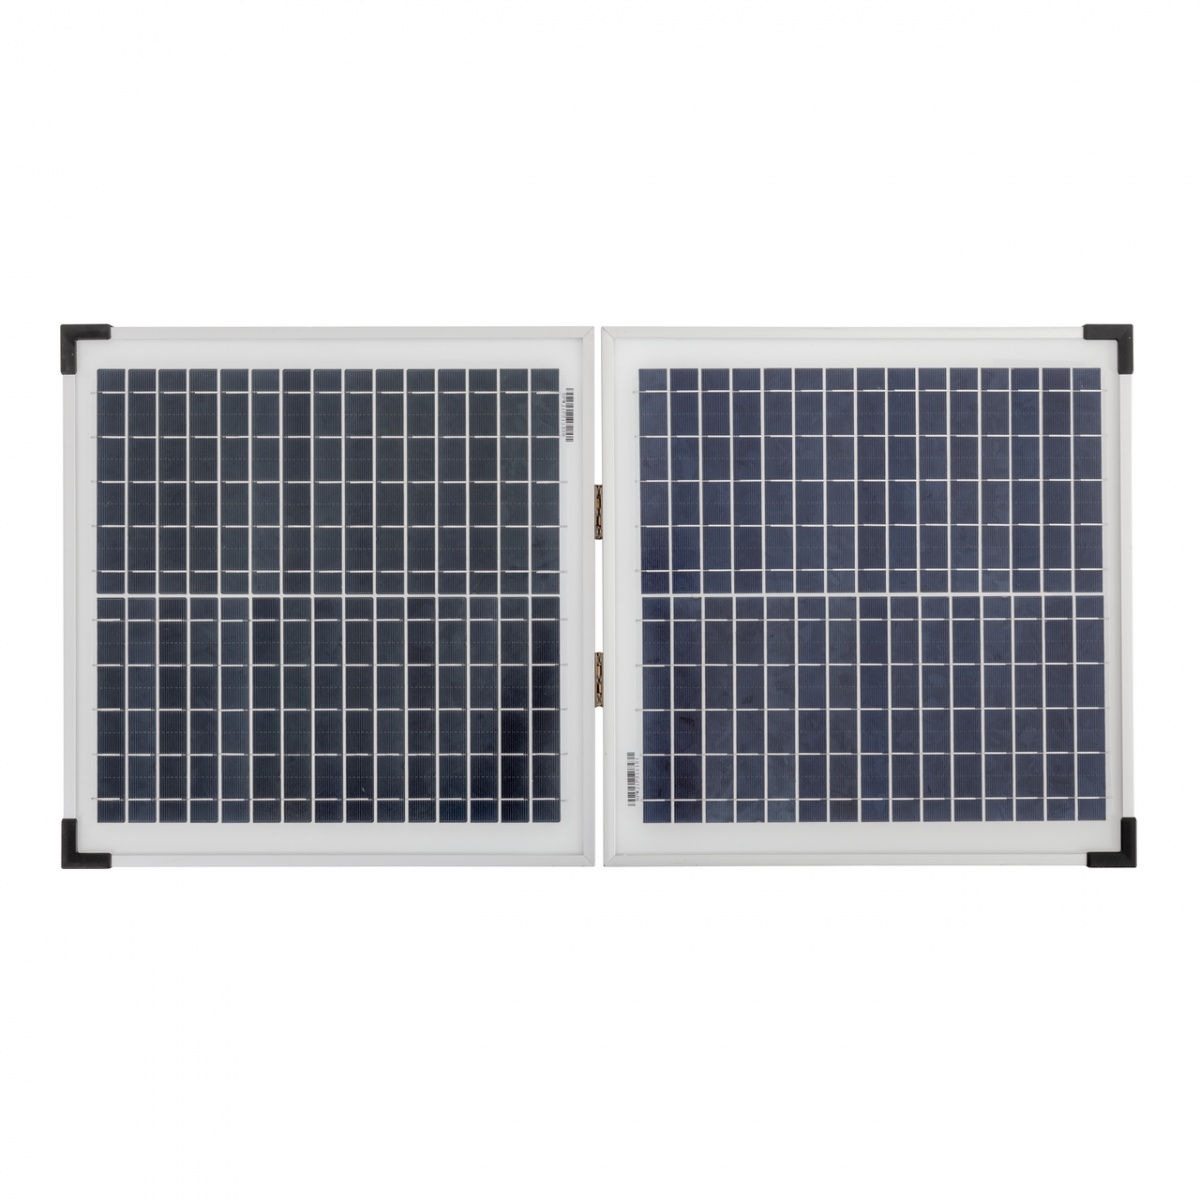 AKO S 3000 villanypásztor készülék napelemmel és akkumulátorral, 3 Joule